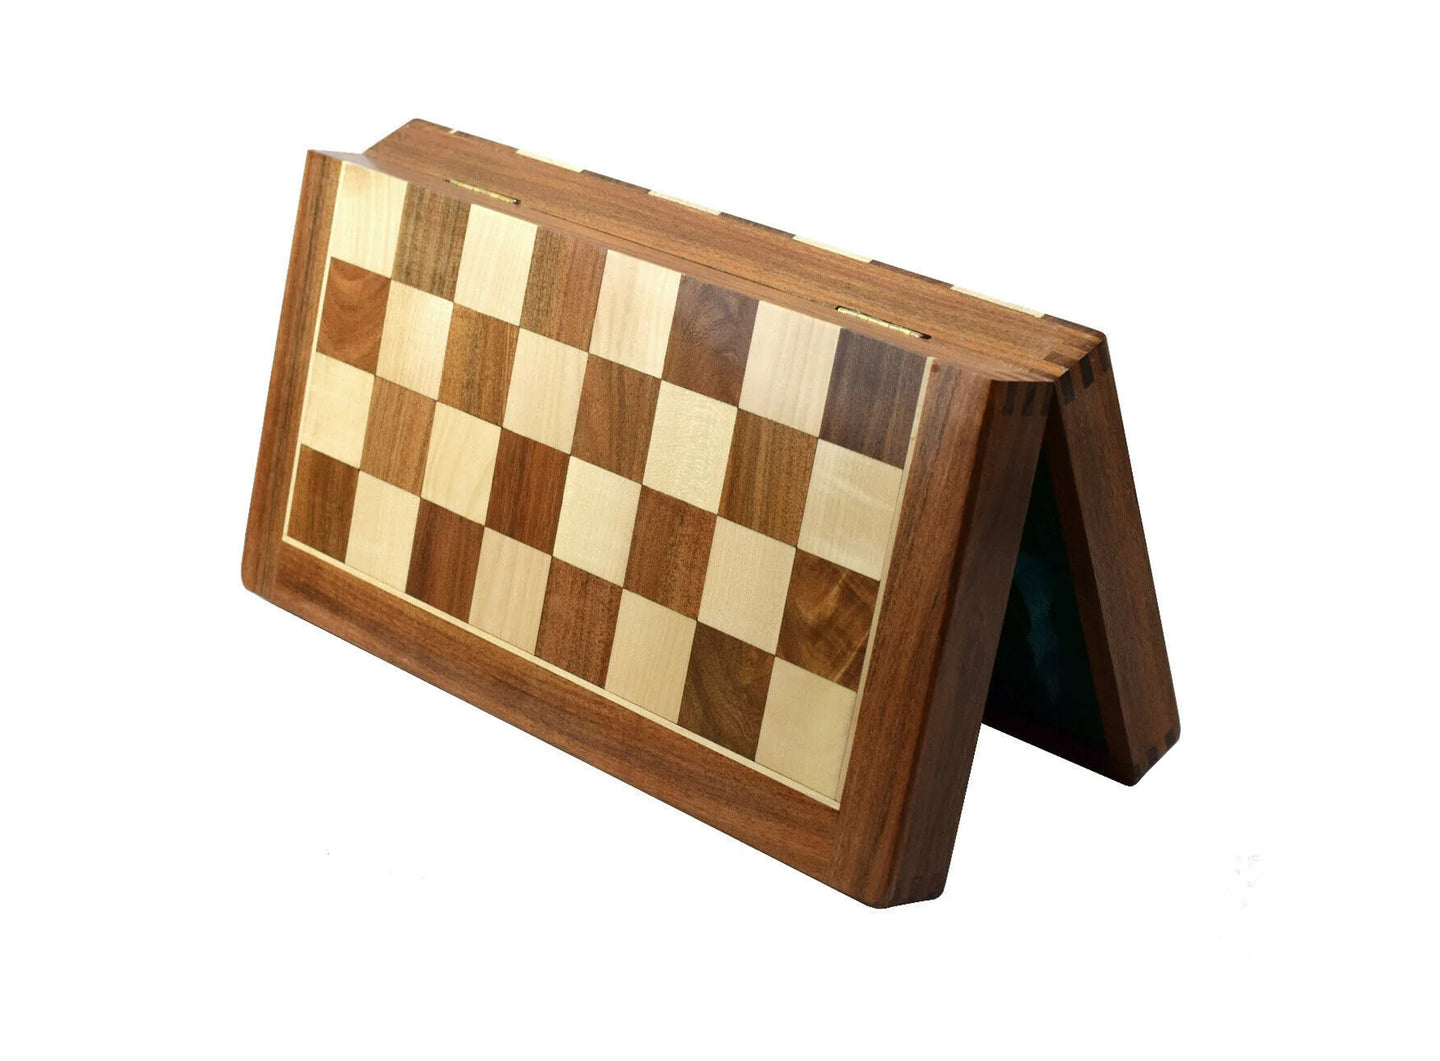 Tablero de ajedrez 18' de madera de acacia y boj plegable hecho a mano de la India para guardar.